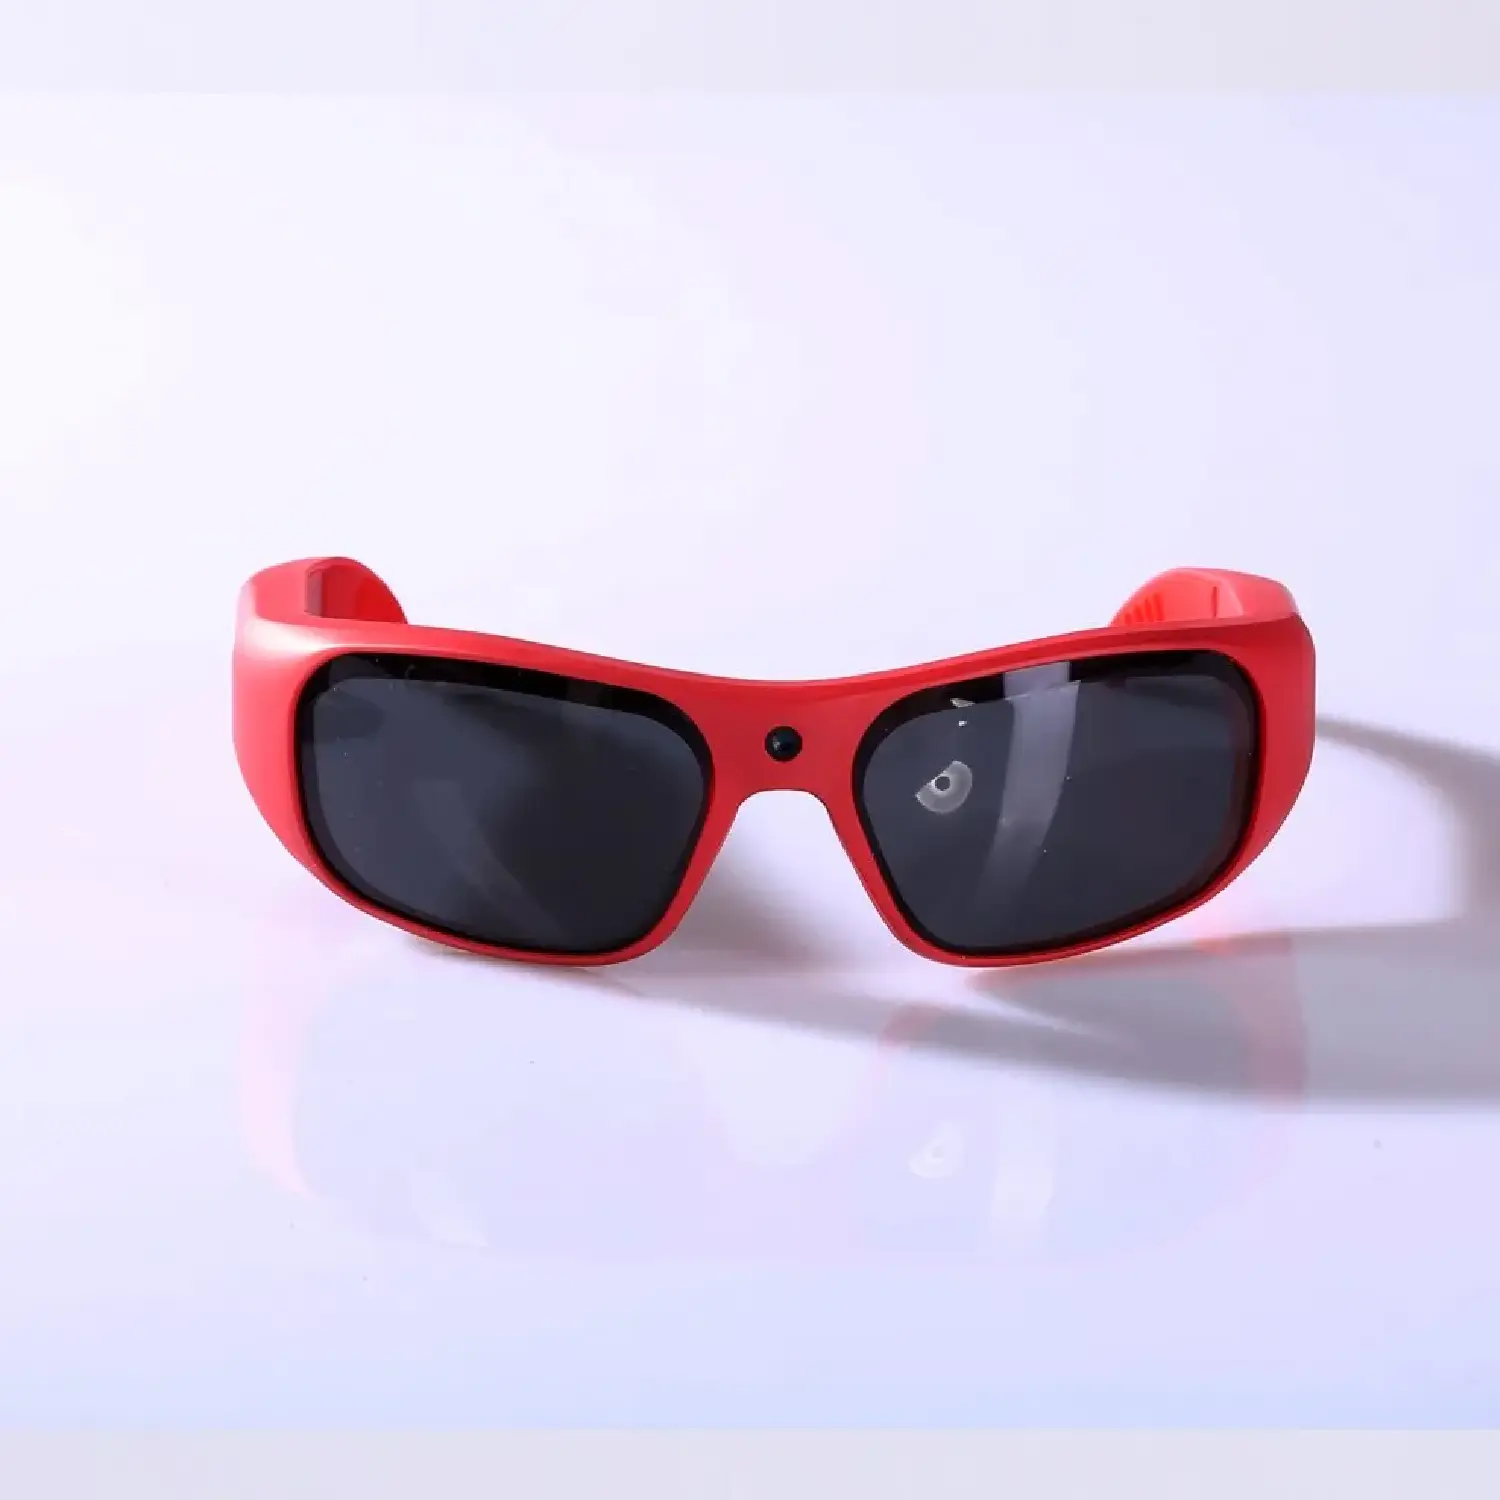 Go Vision Apollo Video Camera Sunglasses